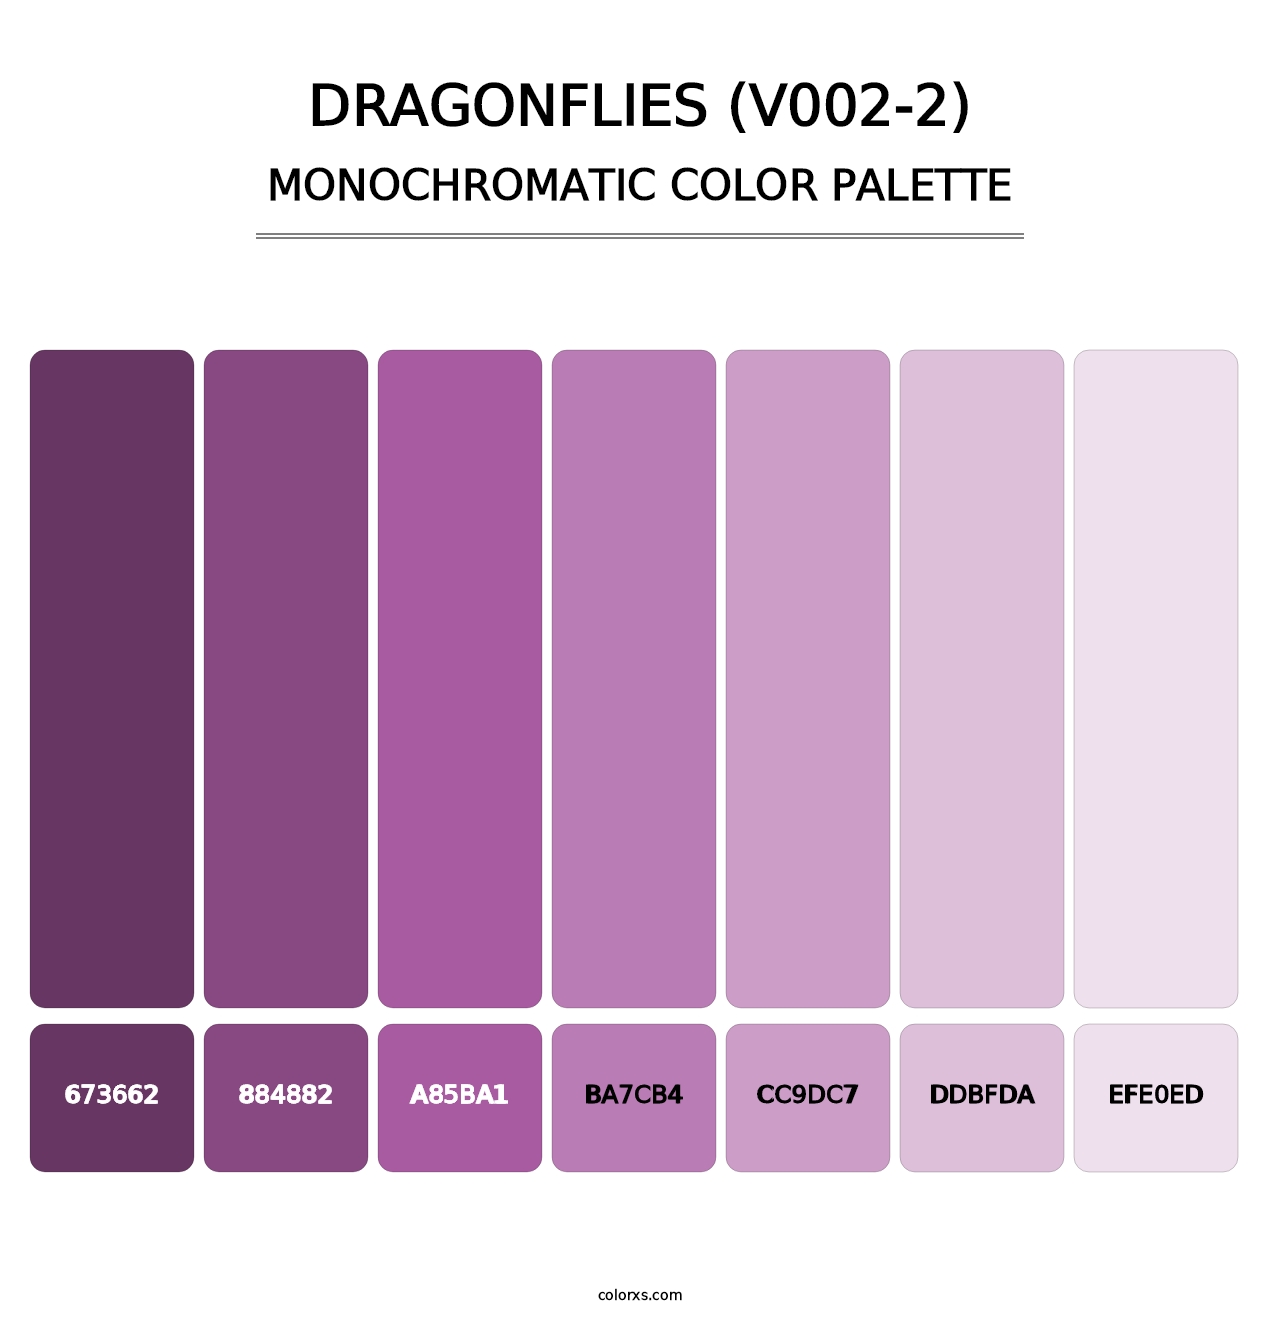 Dragonflies (V002-2) - Monochromatic Color Palette